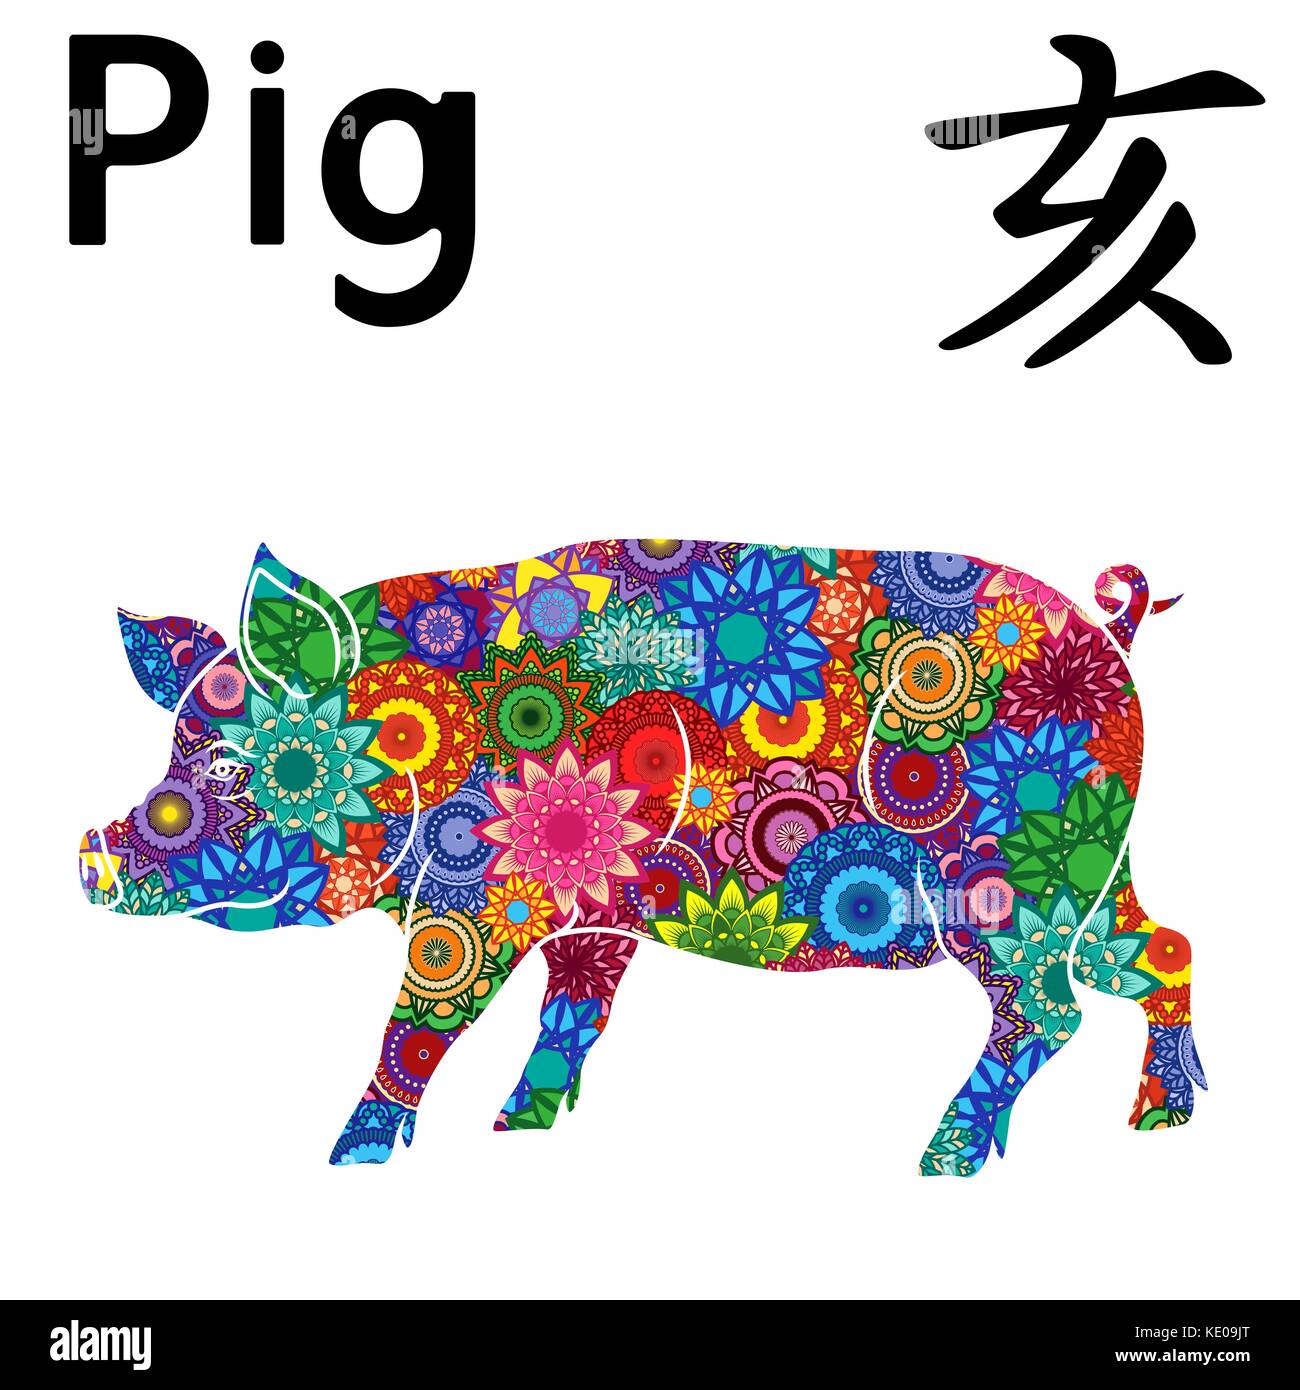 Östlichen Chinesischen Sternzeichen Schwein, festes Element Wasser, Symbol für das Neue Jahr auf dem Östlichen Kalender, Hand gezeichnet Vektor Schablone mit Farbe stilisierte Blume Stock Vektor